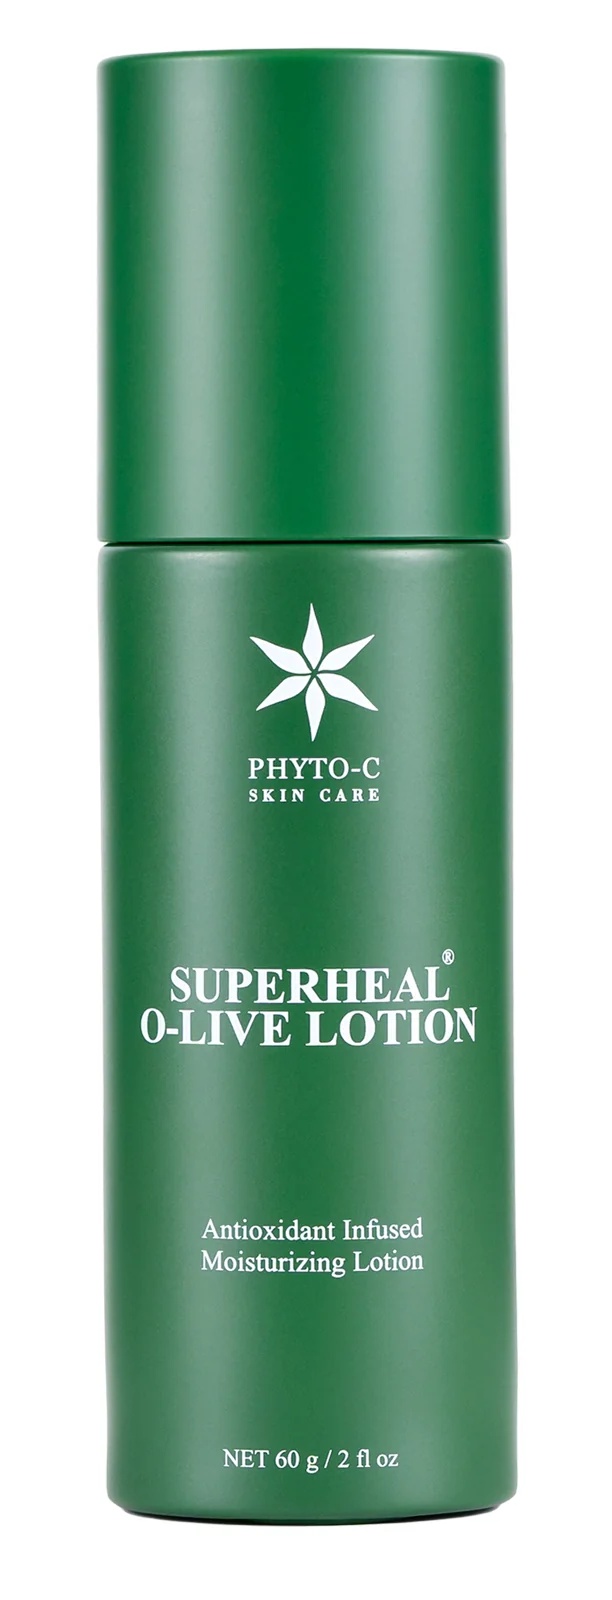 Phyto-C SuperHeal O-Live Lotion